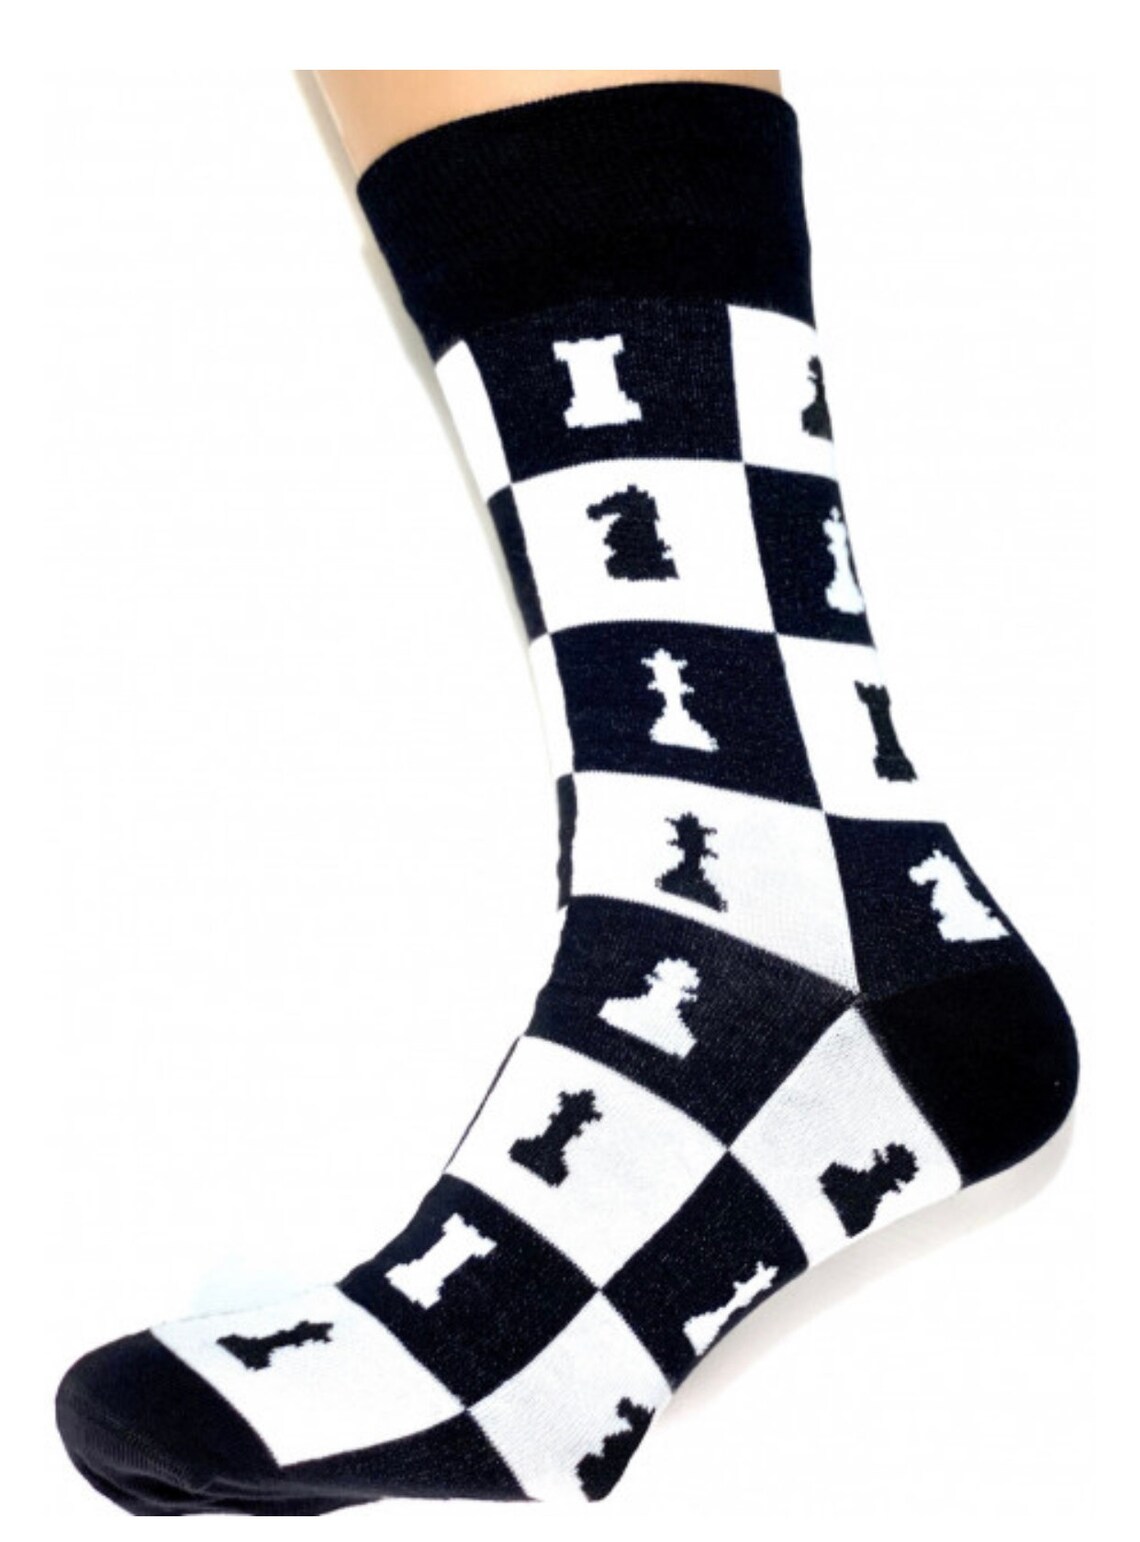 Chess socks | Etsy